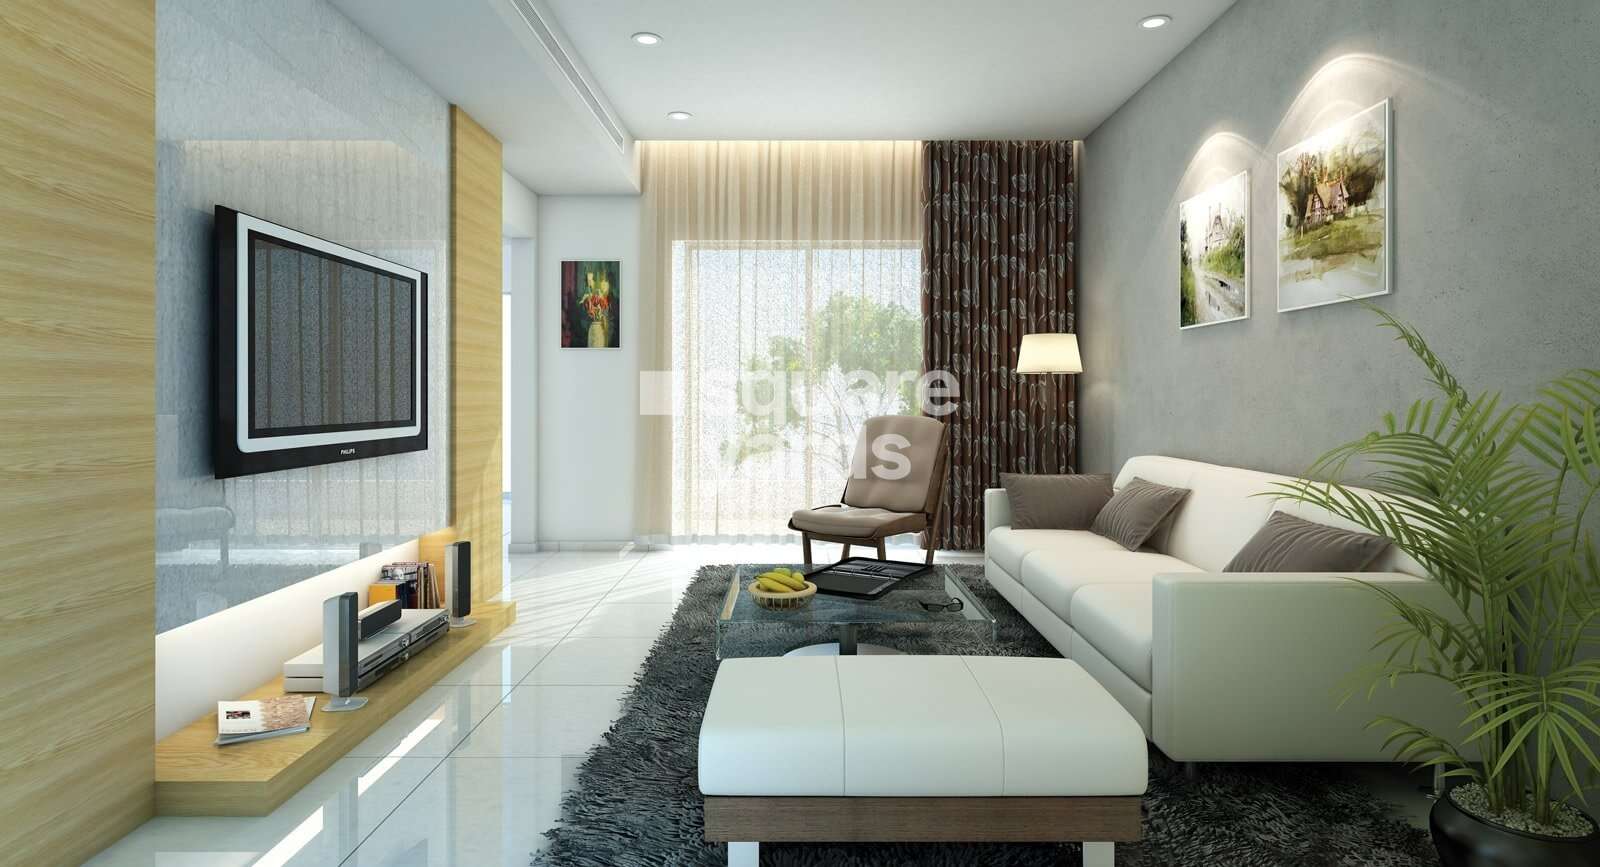 zenith utsav residency phase 2 apartment interiors6